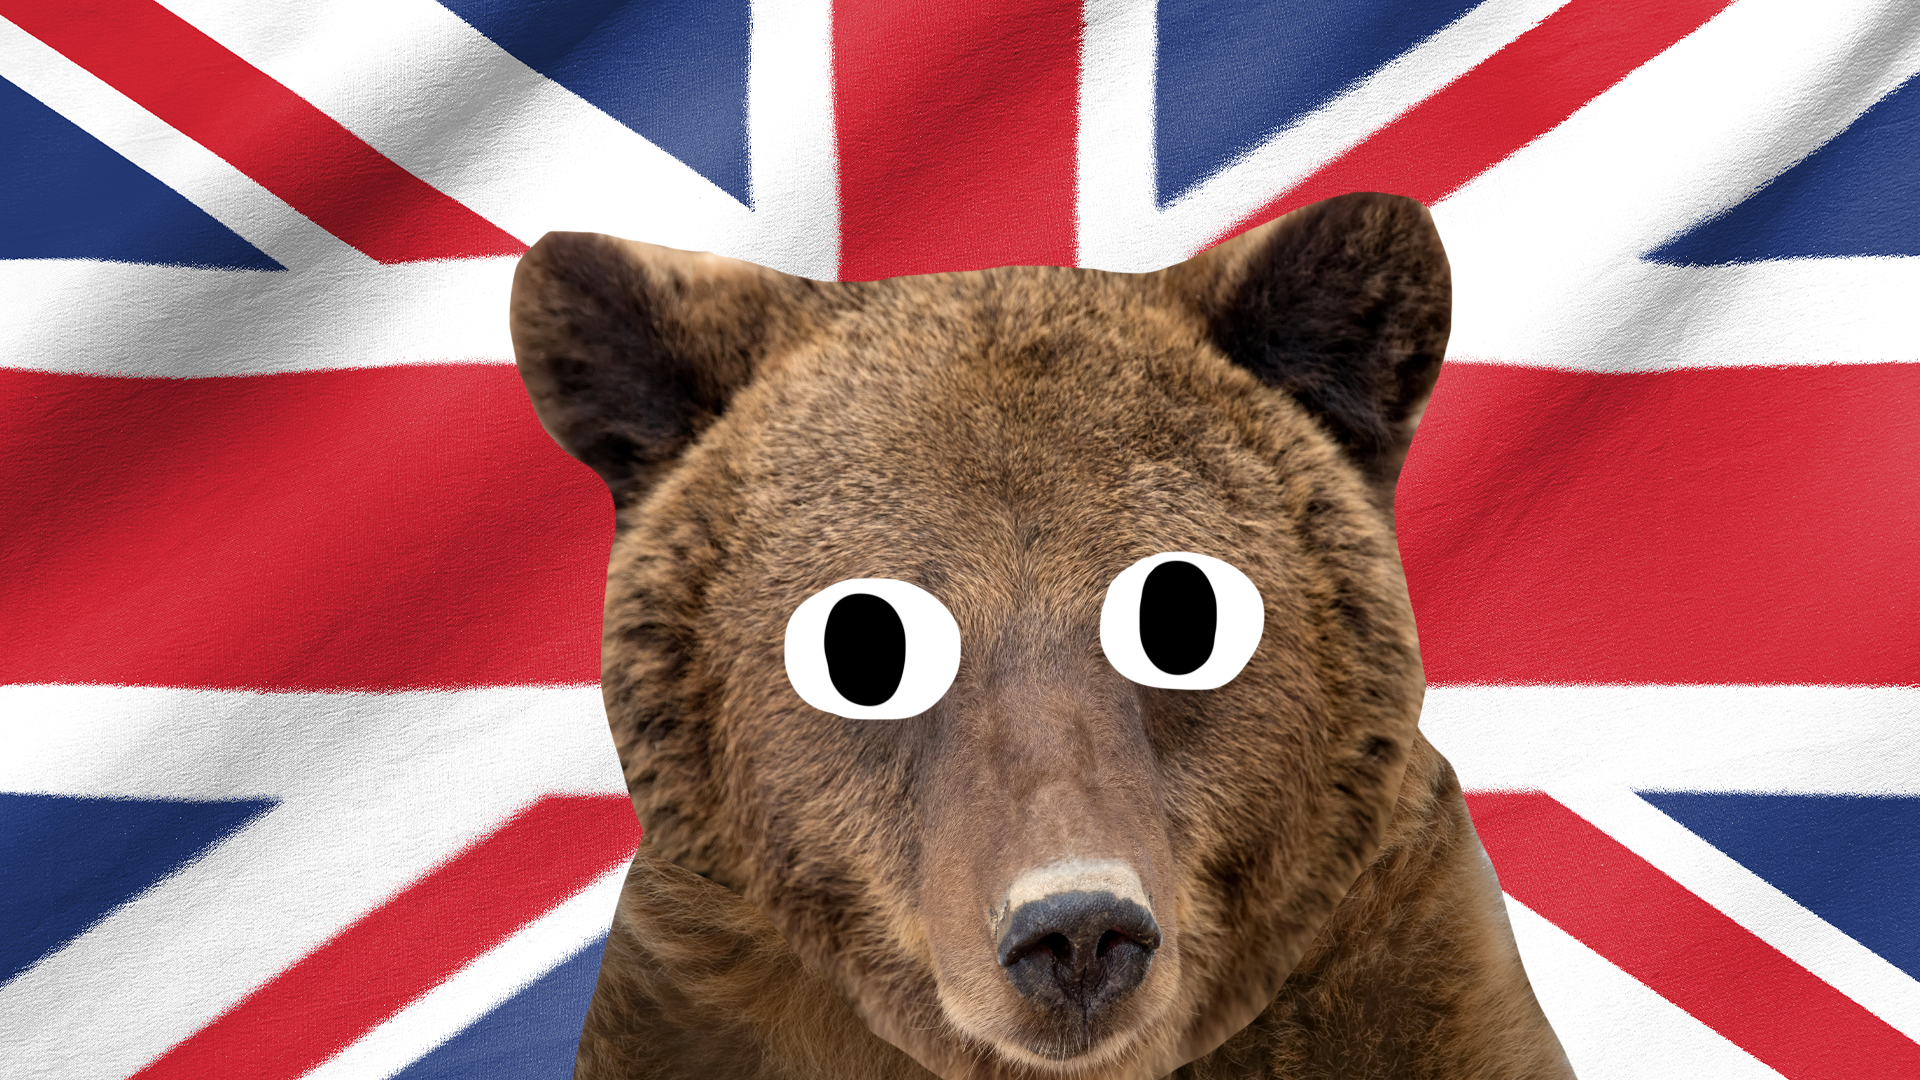 A British bear